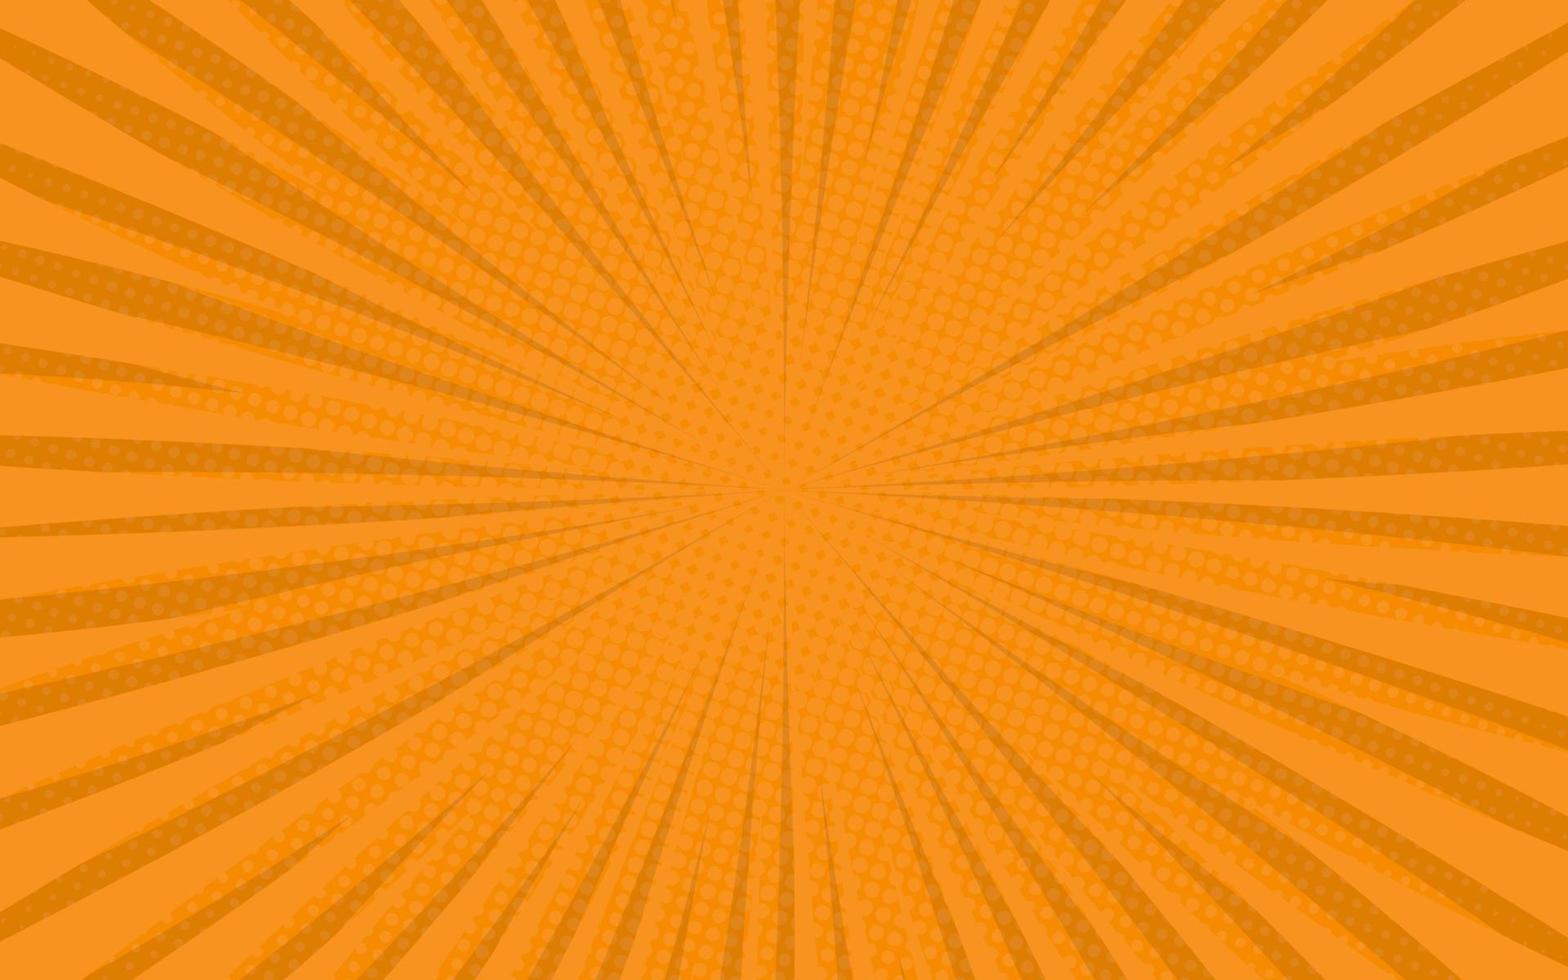 rayons de soleil style vintage rétro sur fond orange. motif comique avec starburst et demi-teintes. effet sunburst rétro de dessin animé avec des points. illustration vectorielle de bannière d'été vecteur